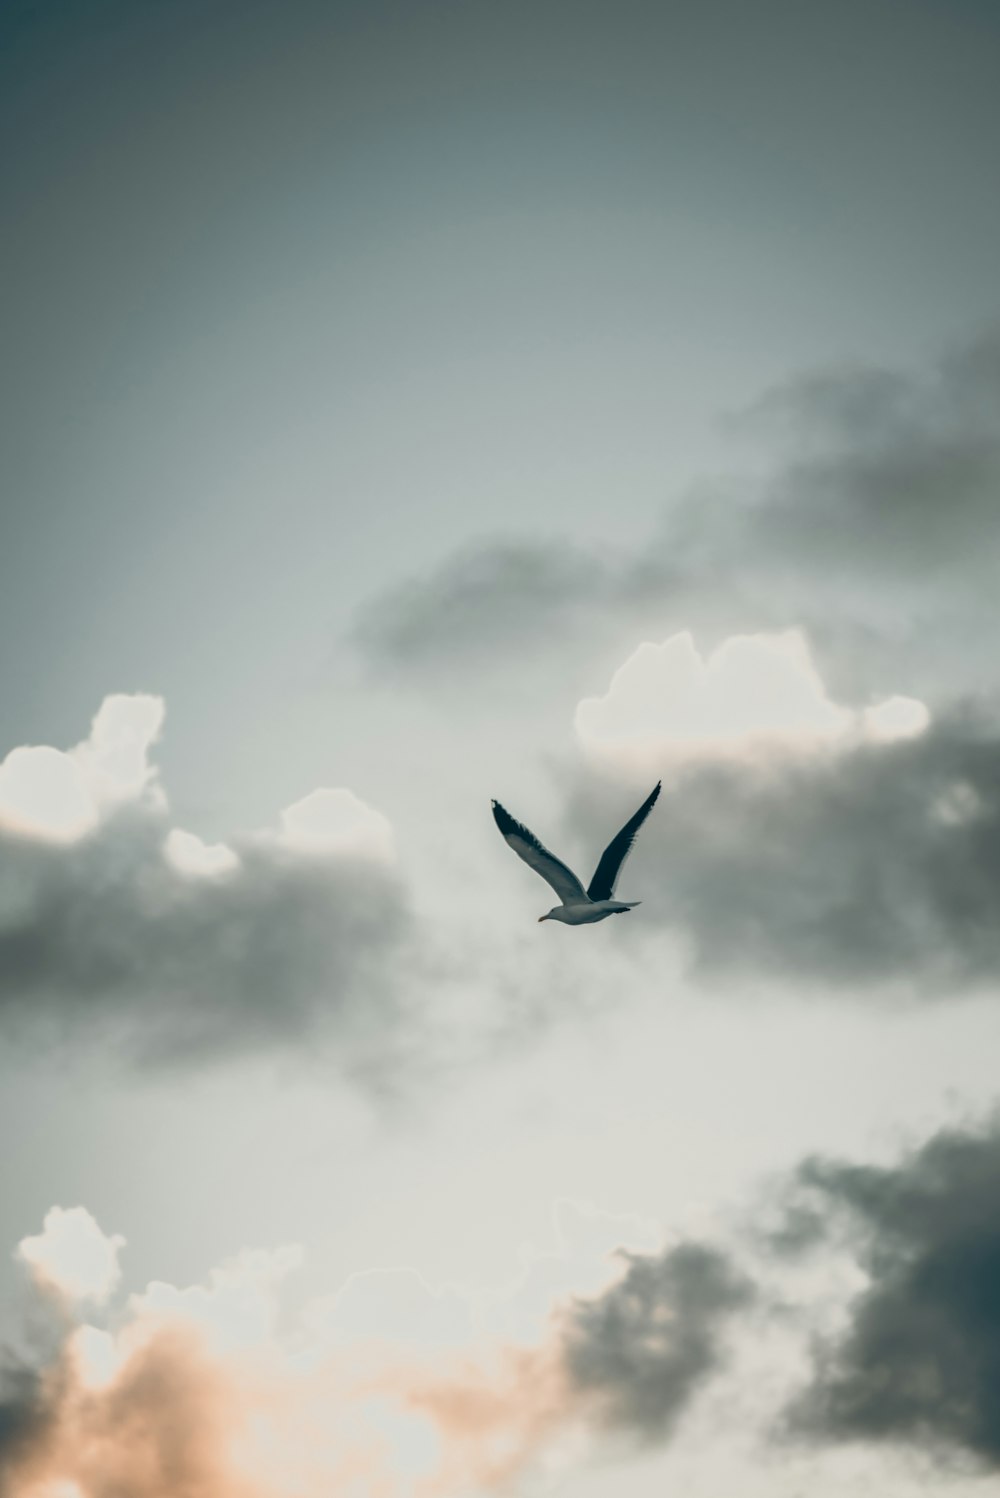 pájaro volando bajo nubes blancas durante el día